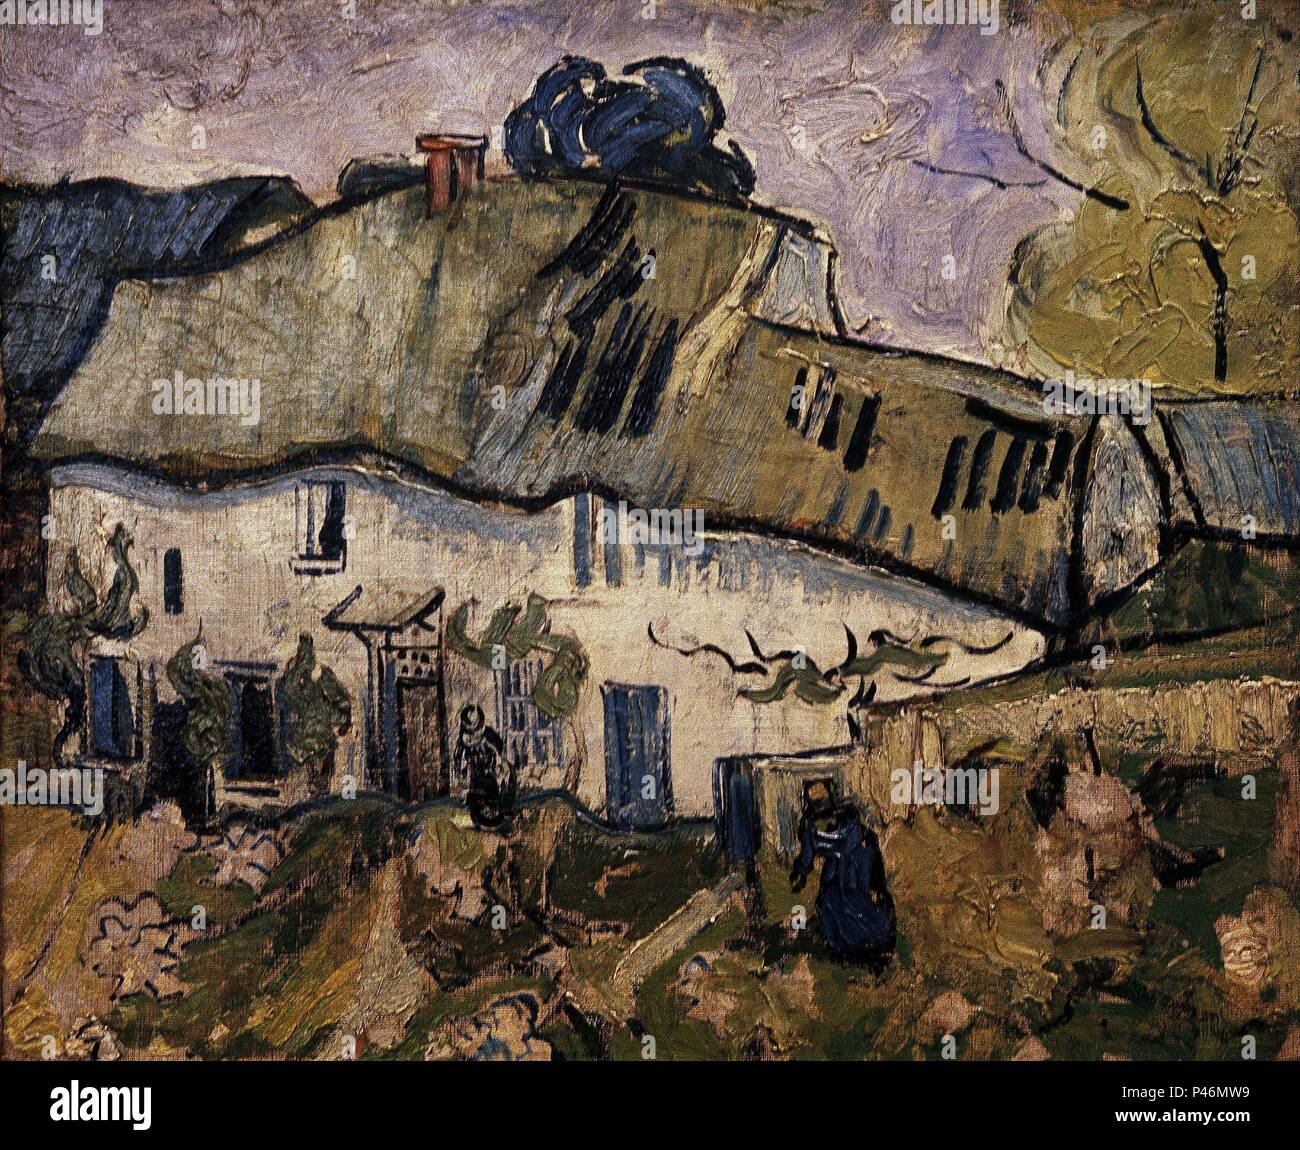 Niederländische Schule. Bauernhaus mit zwei Zahlen. 1890. Öl auf Leinwand (38 cm x 45 cm). Amsterdam, Van Gogh Museum. Autor: Vincent van Gogh (1853-1890). Ort: Van Gogh Museum, Amsterdam, HOLANDA. Stockfoto